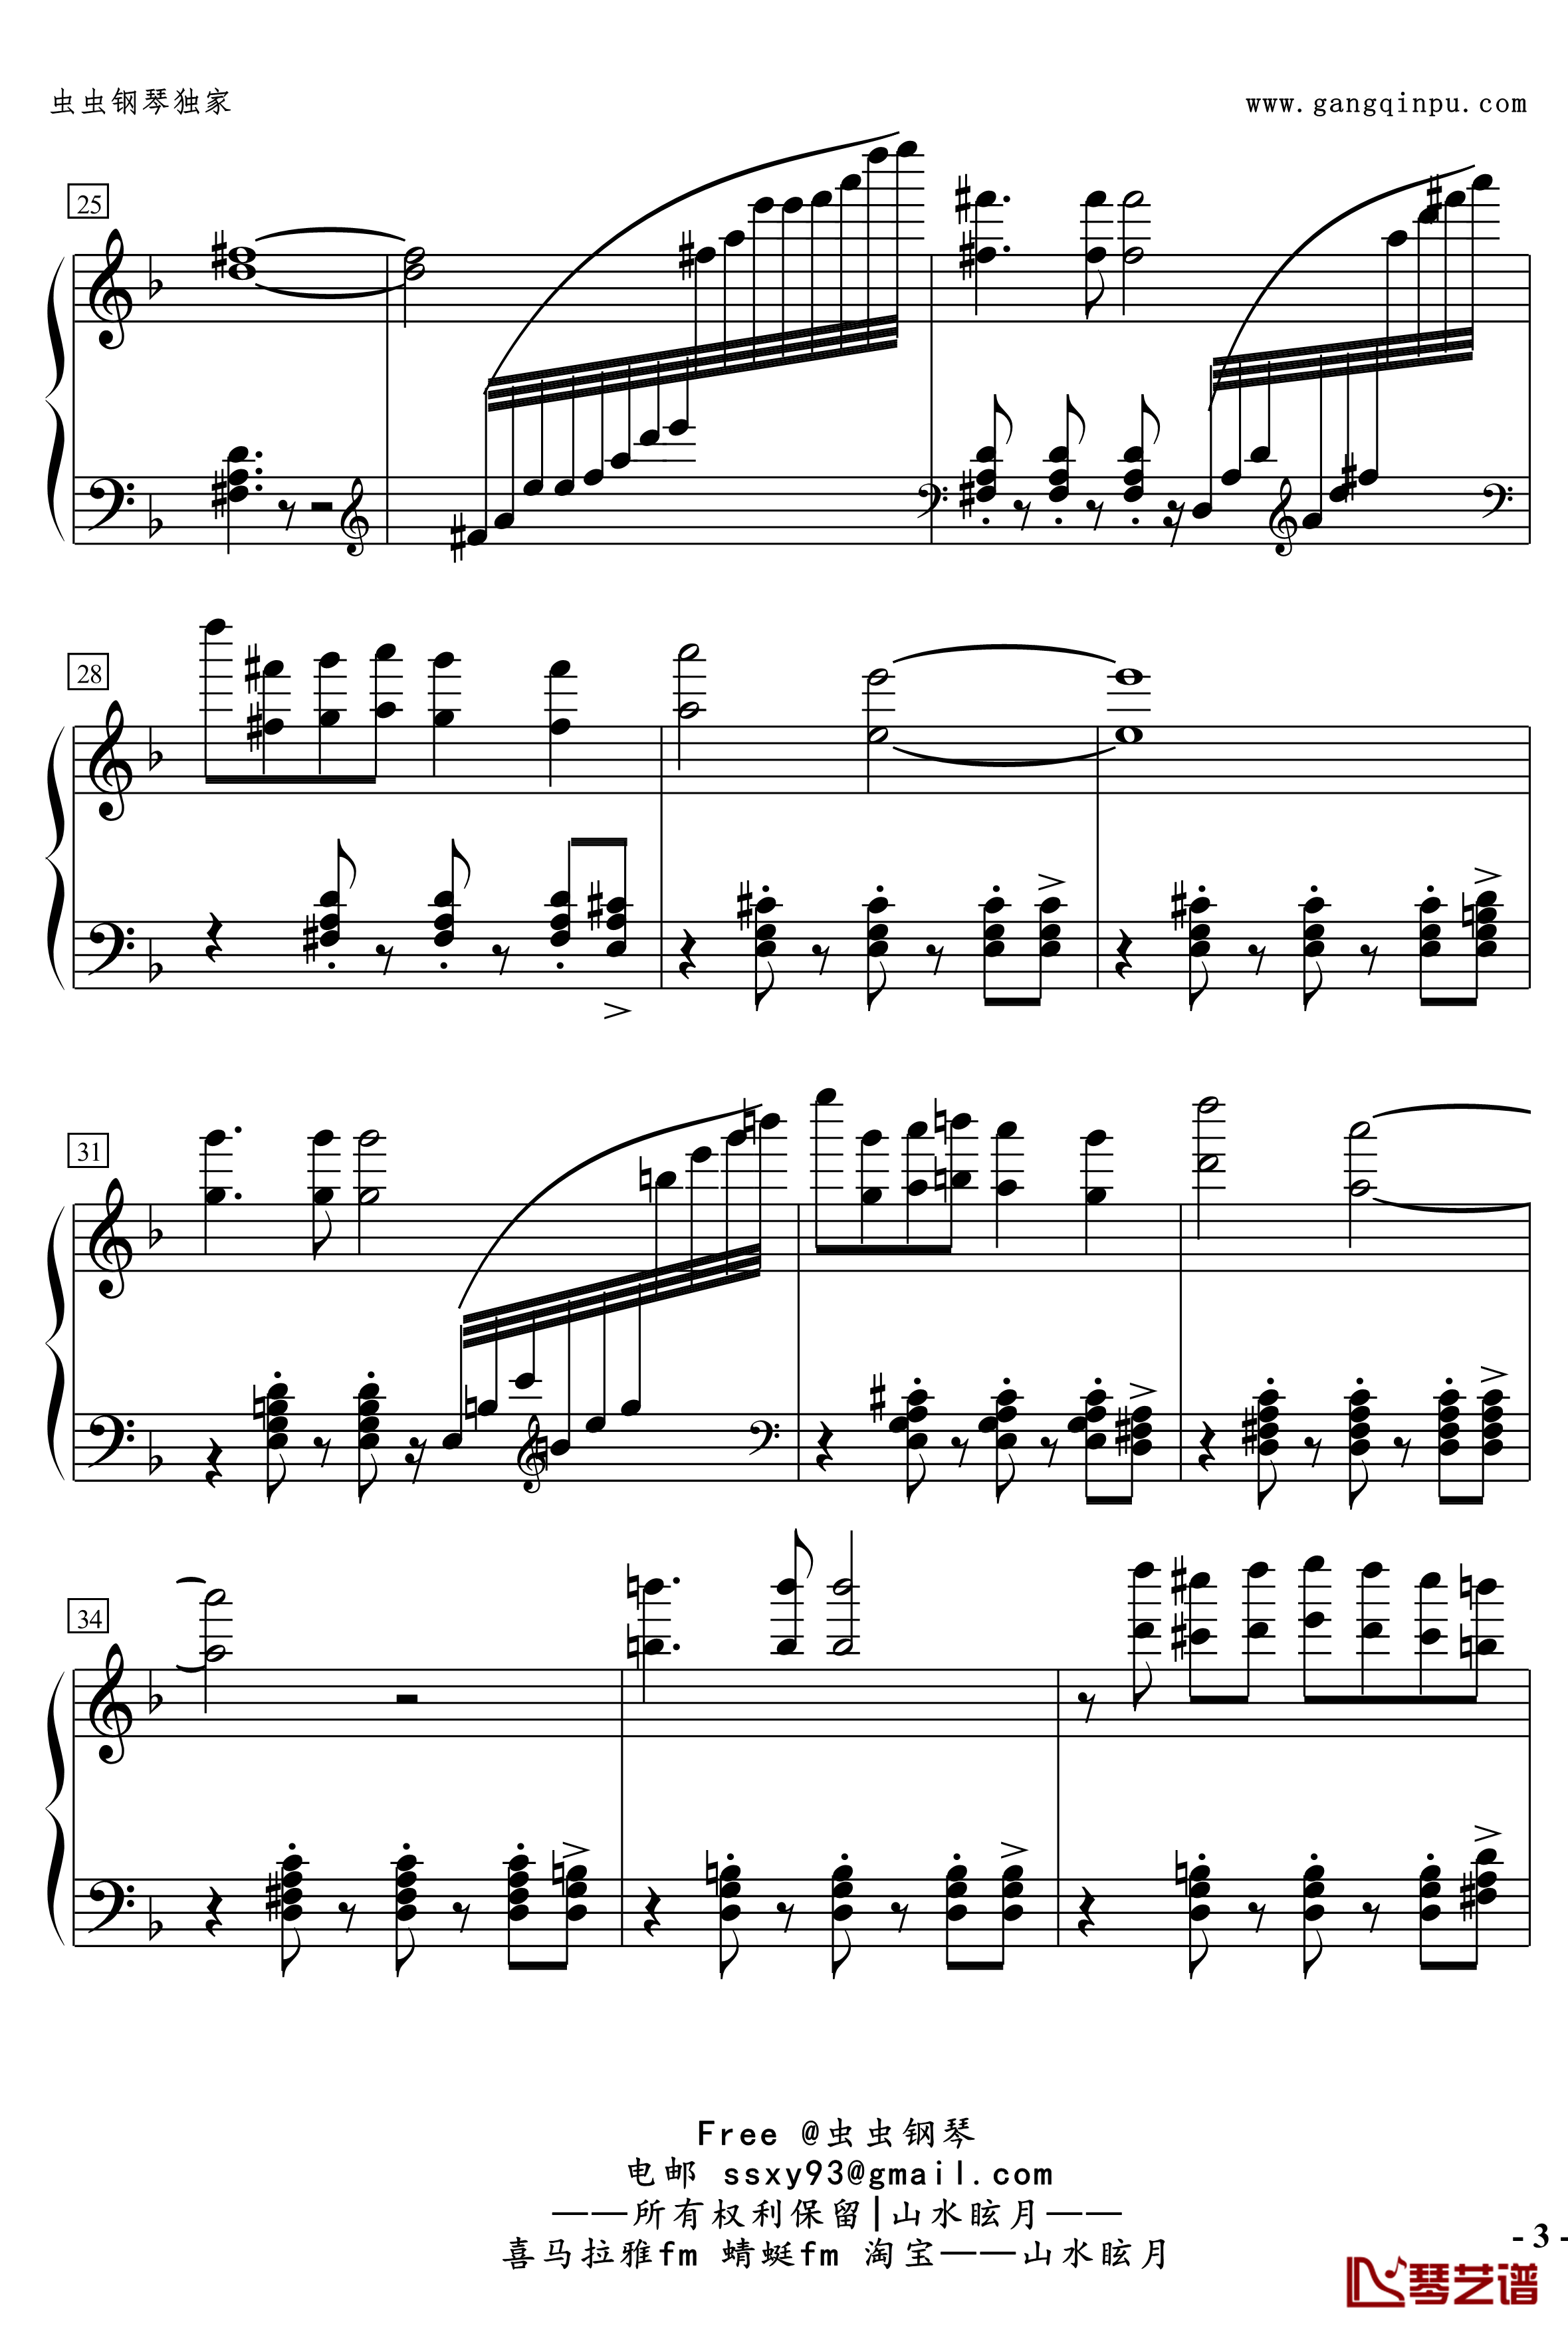 No.2無名探戈钢琴谱-修订-jerry5743